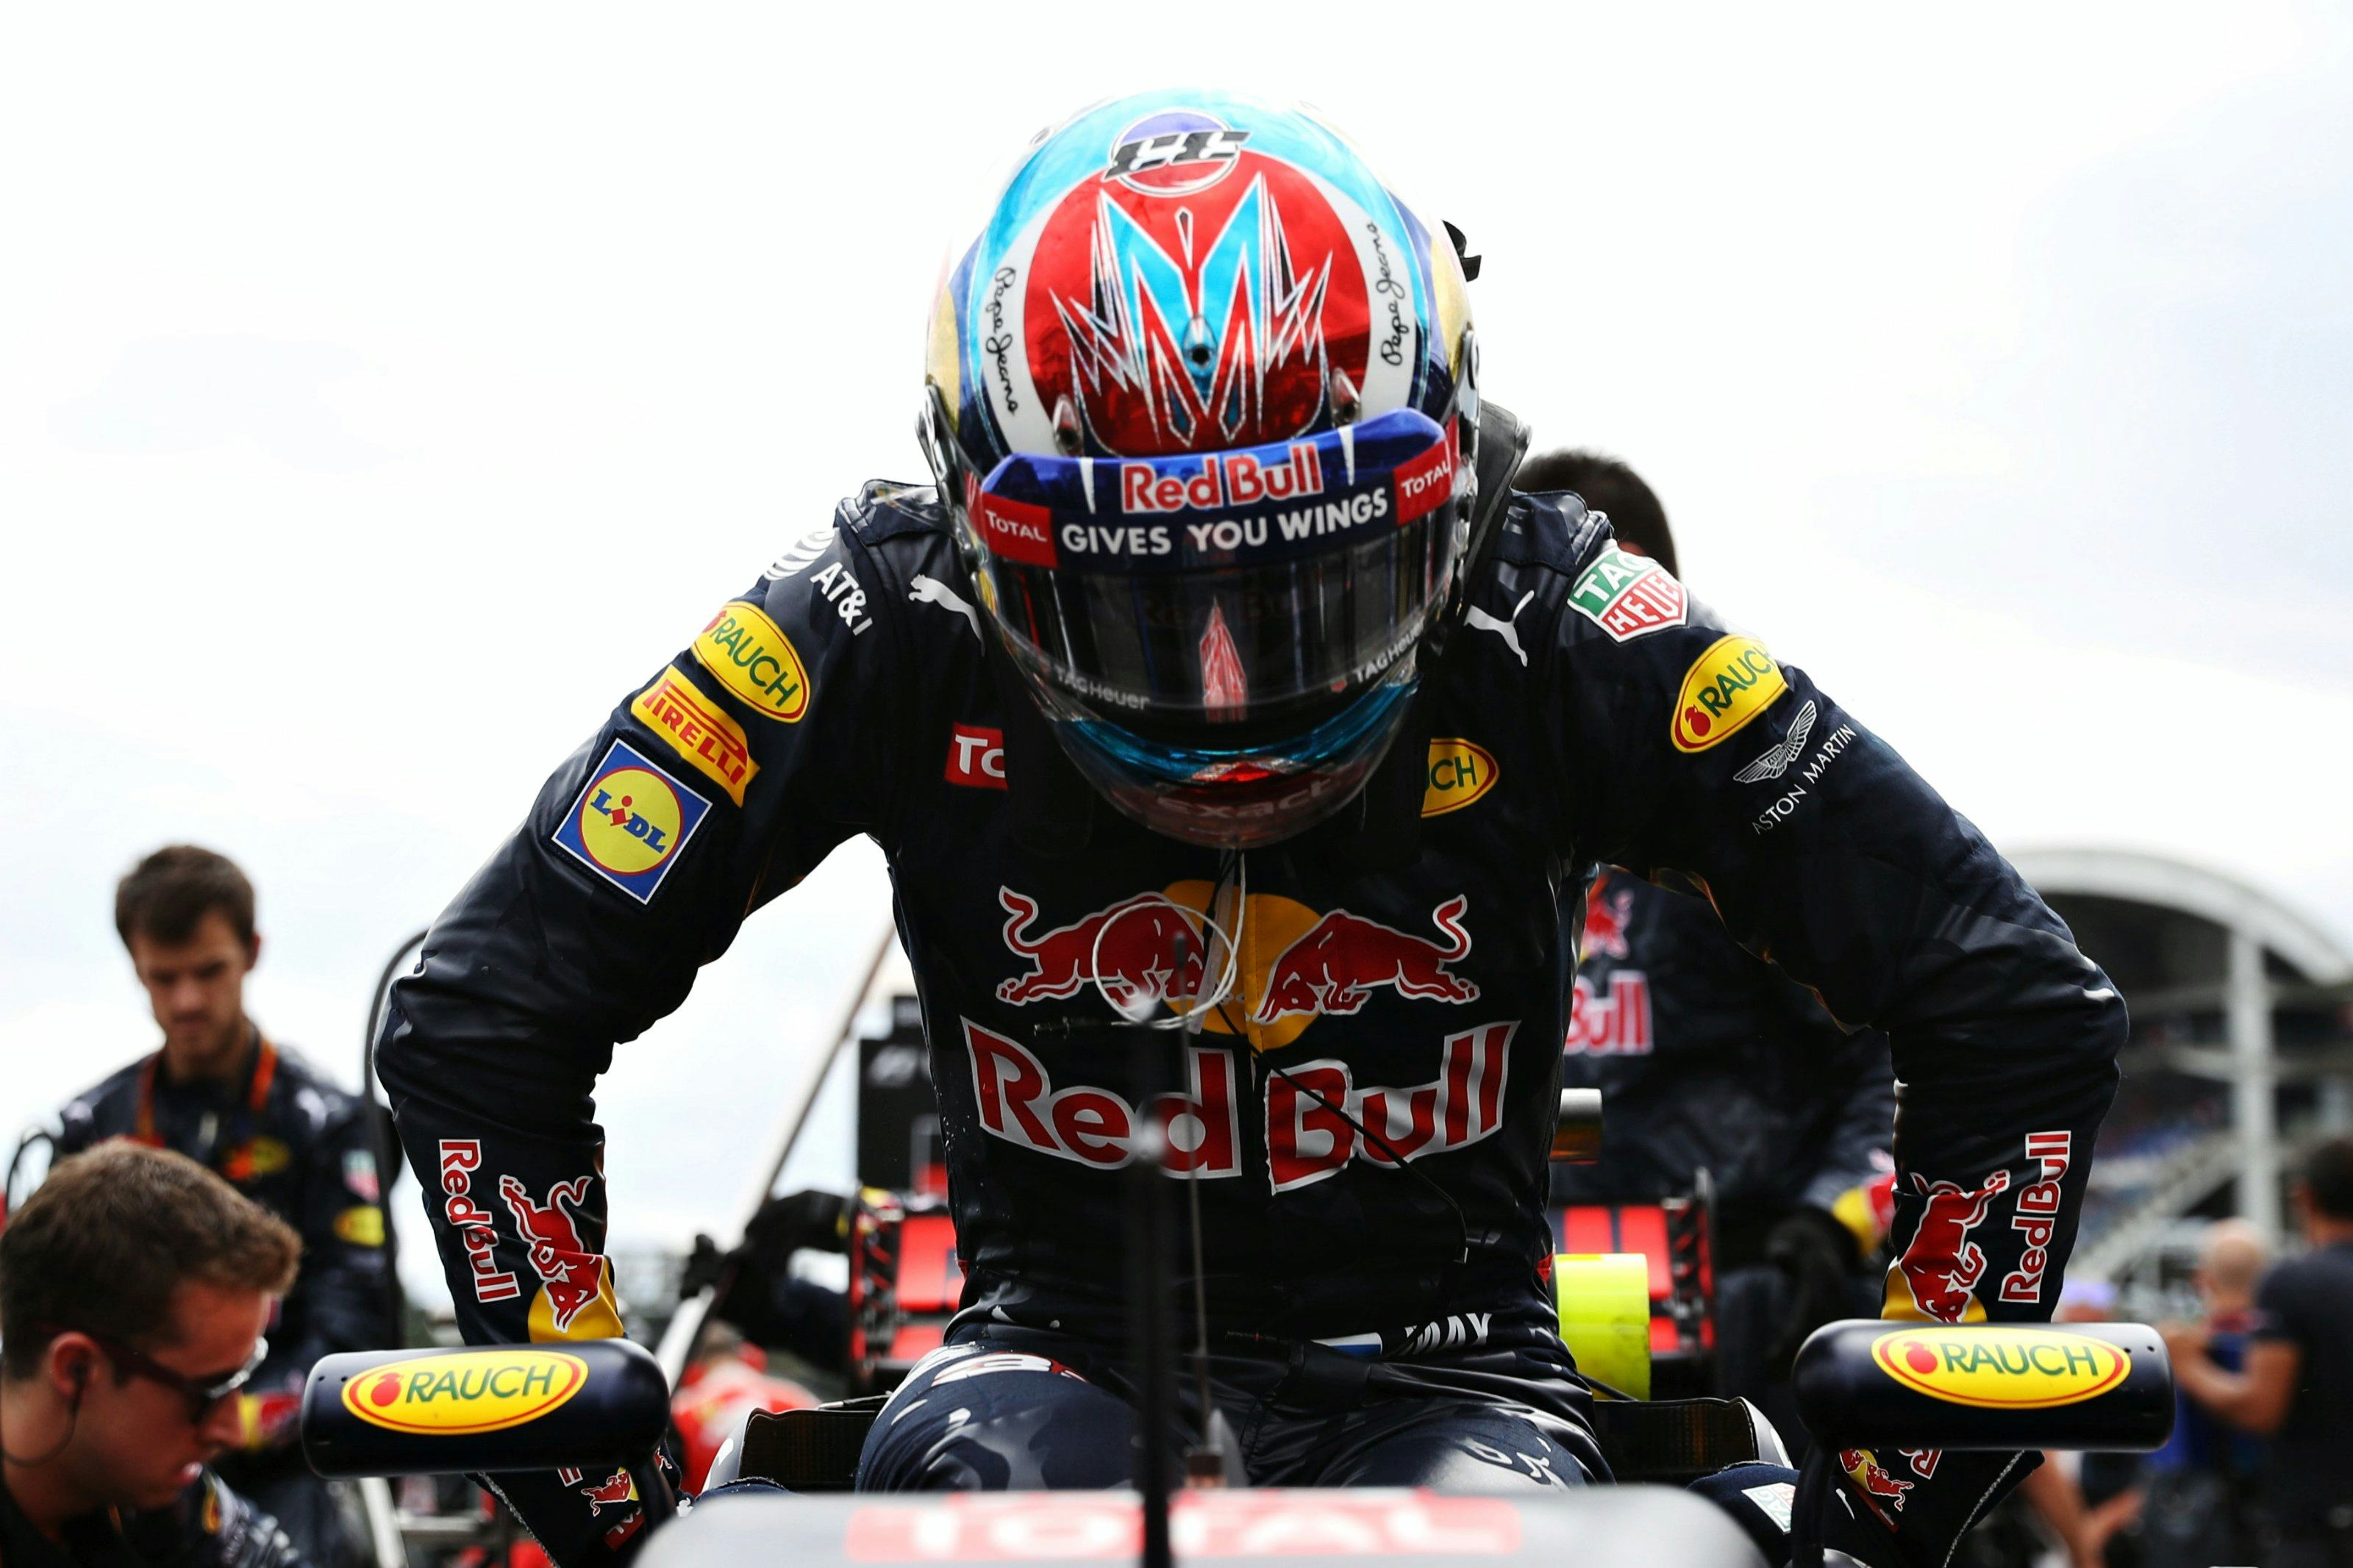 F1-coureur Max Verstappen ligt nog steeds overhoop met online supermarkt Picnic die inbreuk zou maken op zijn portretrecht. © Red Bull Media House